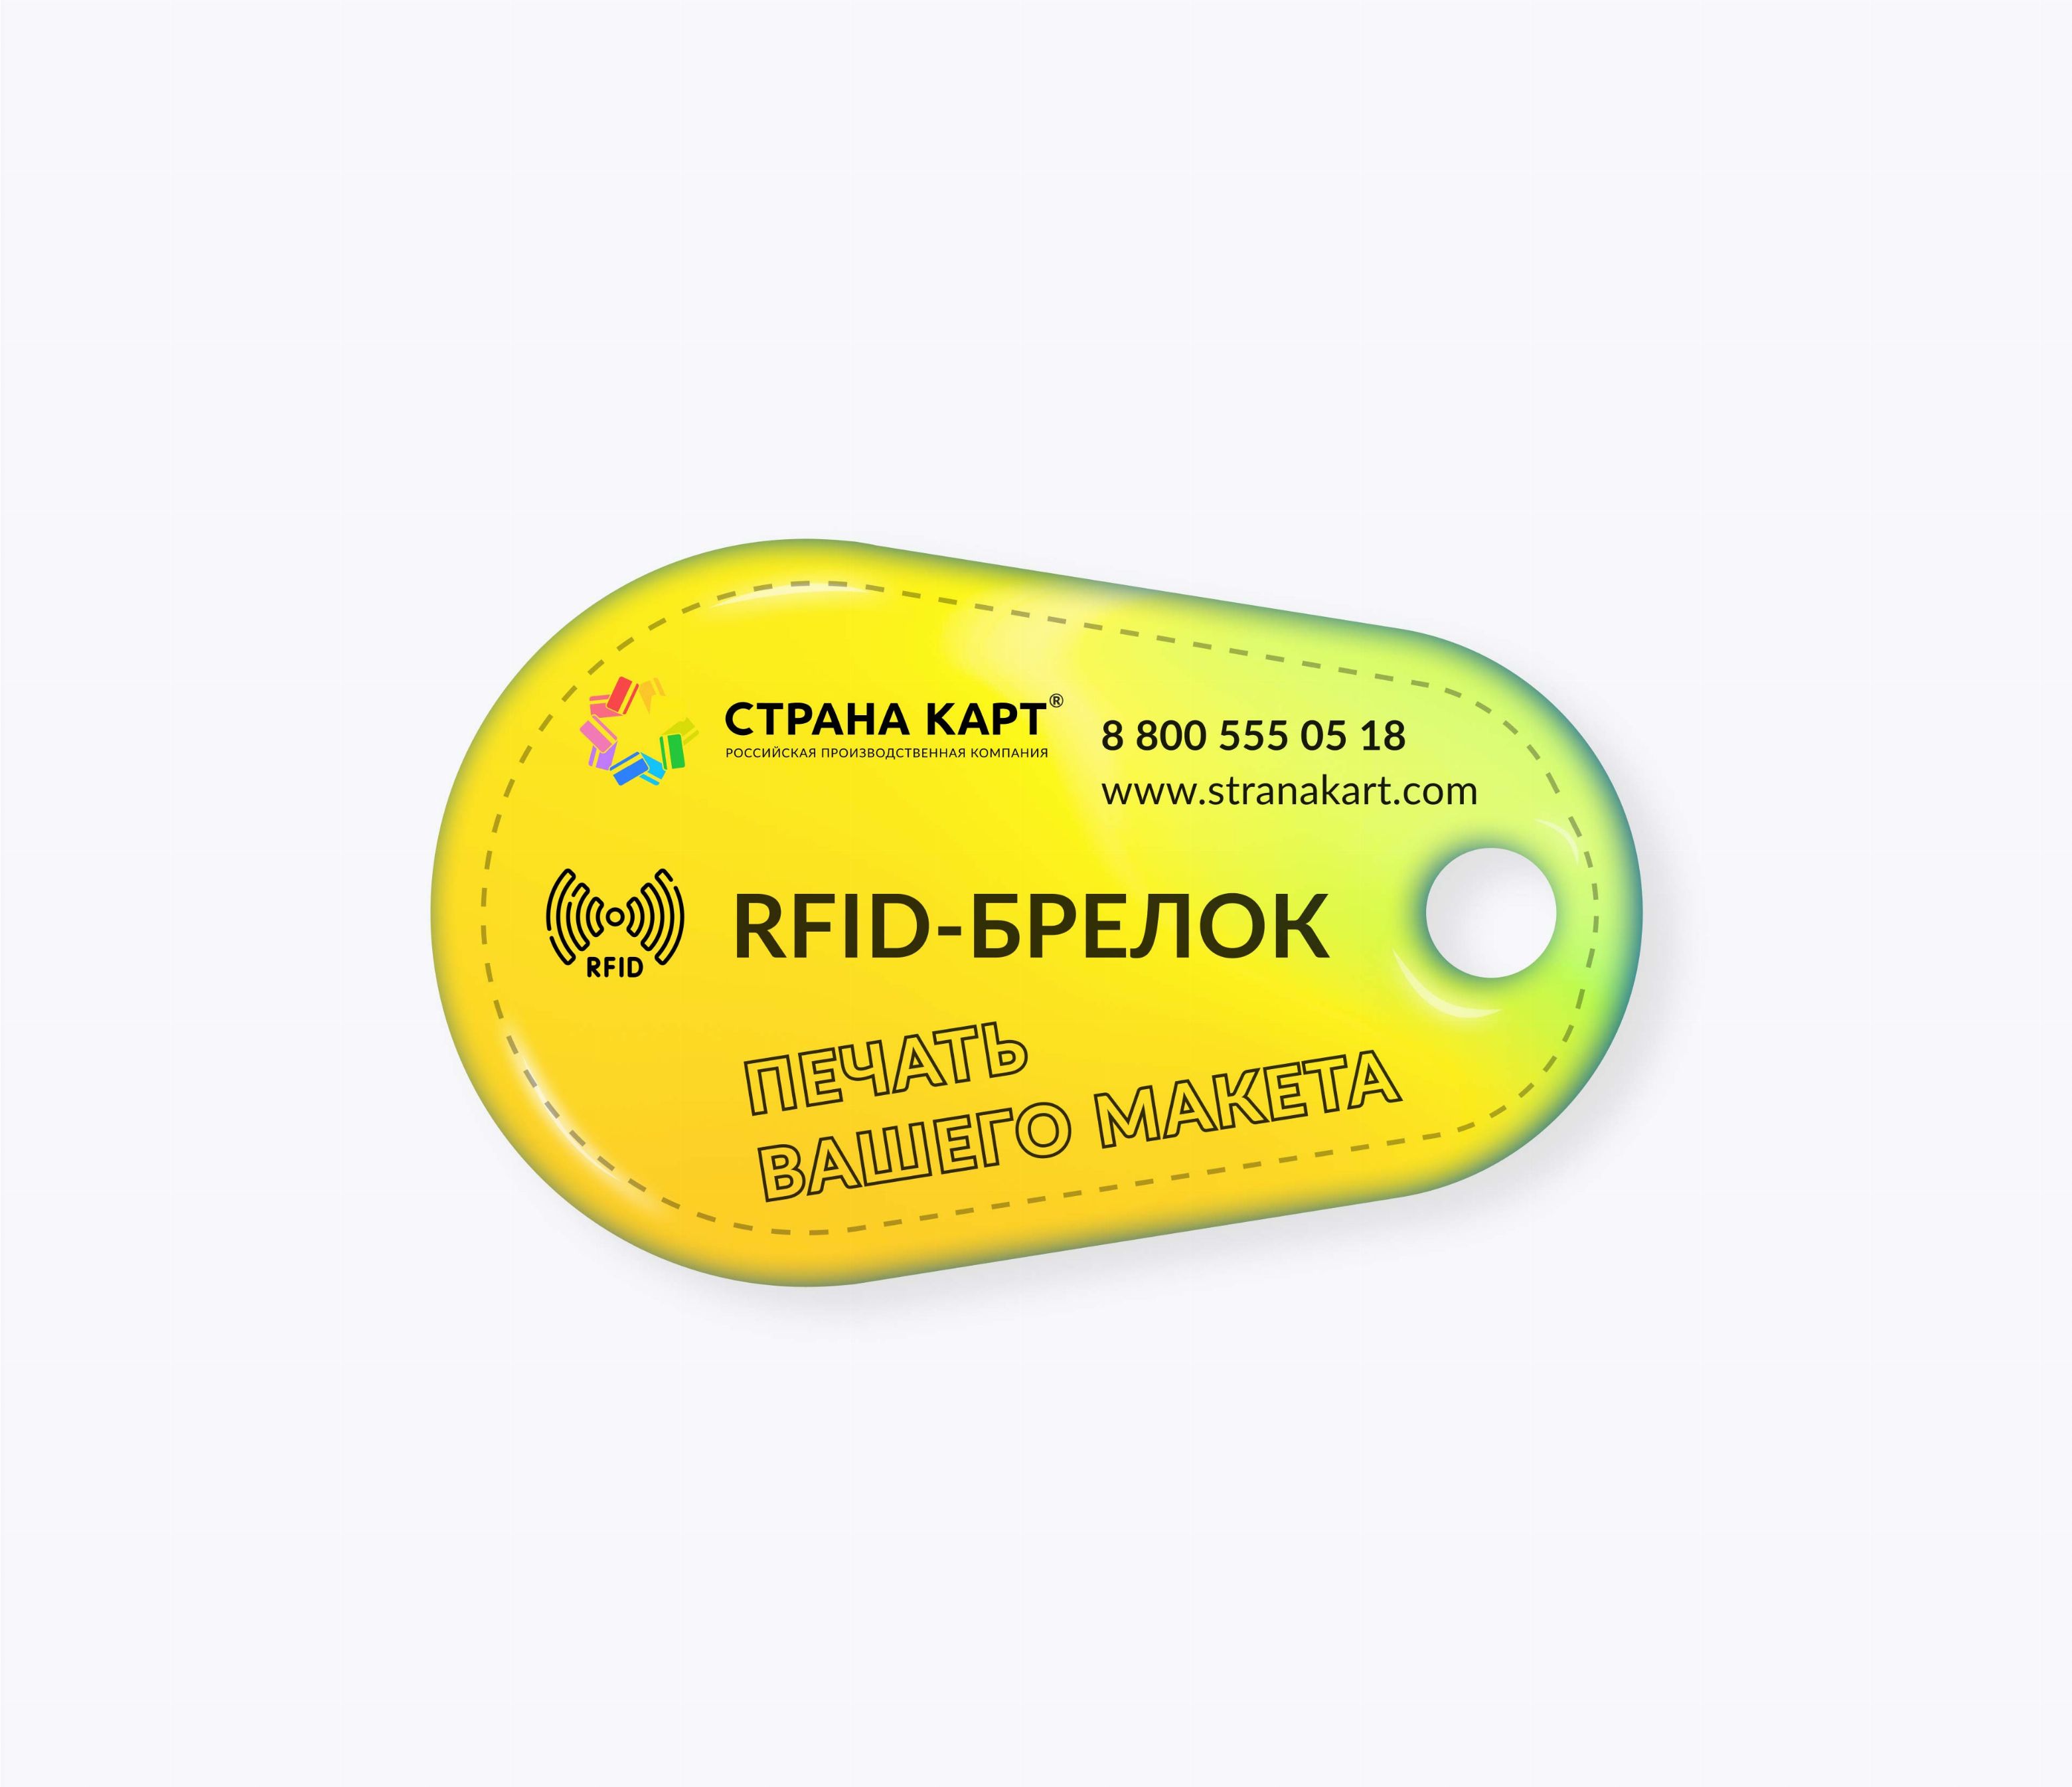 Каплевидные RFID-брелоки NEOKEY® с чипом T5557, T5577 Temic RFID-брелоки NEOKEY® с чипом T5557, T5577 Temic и вашим логотипом